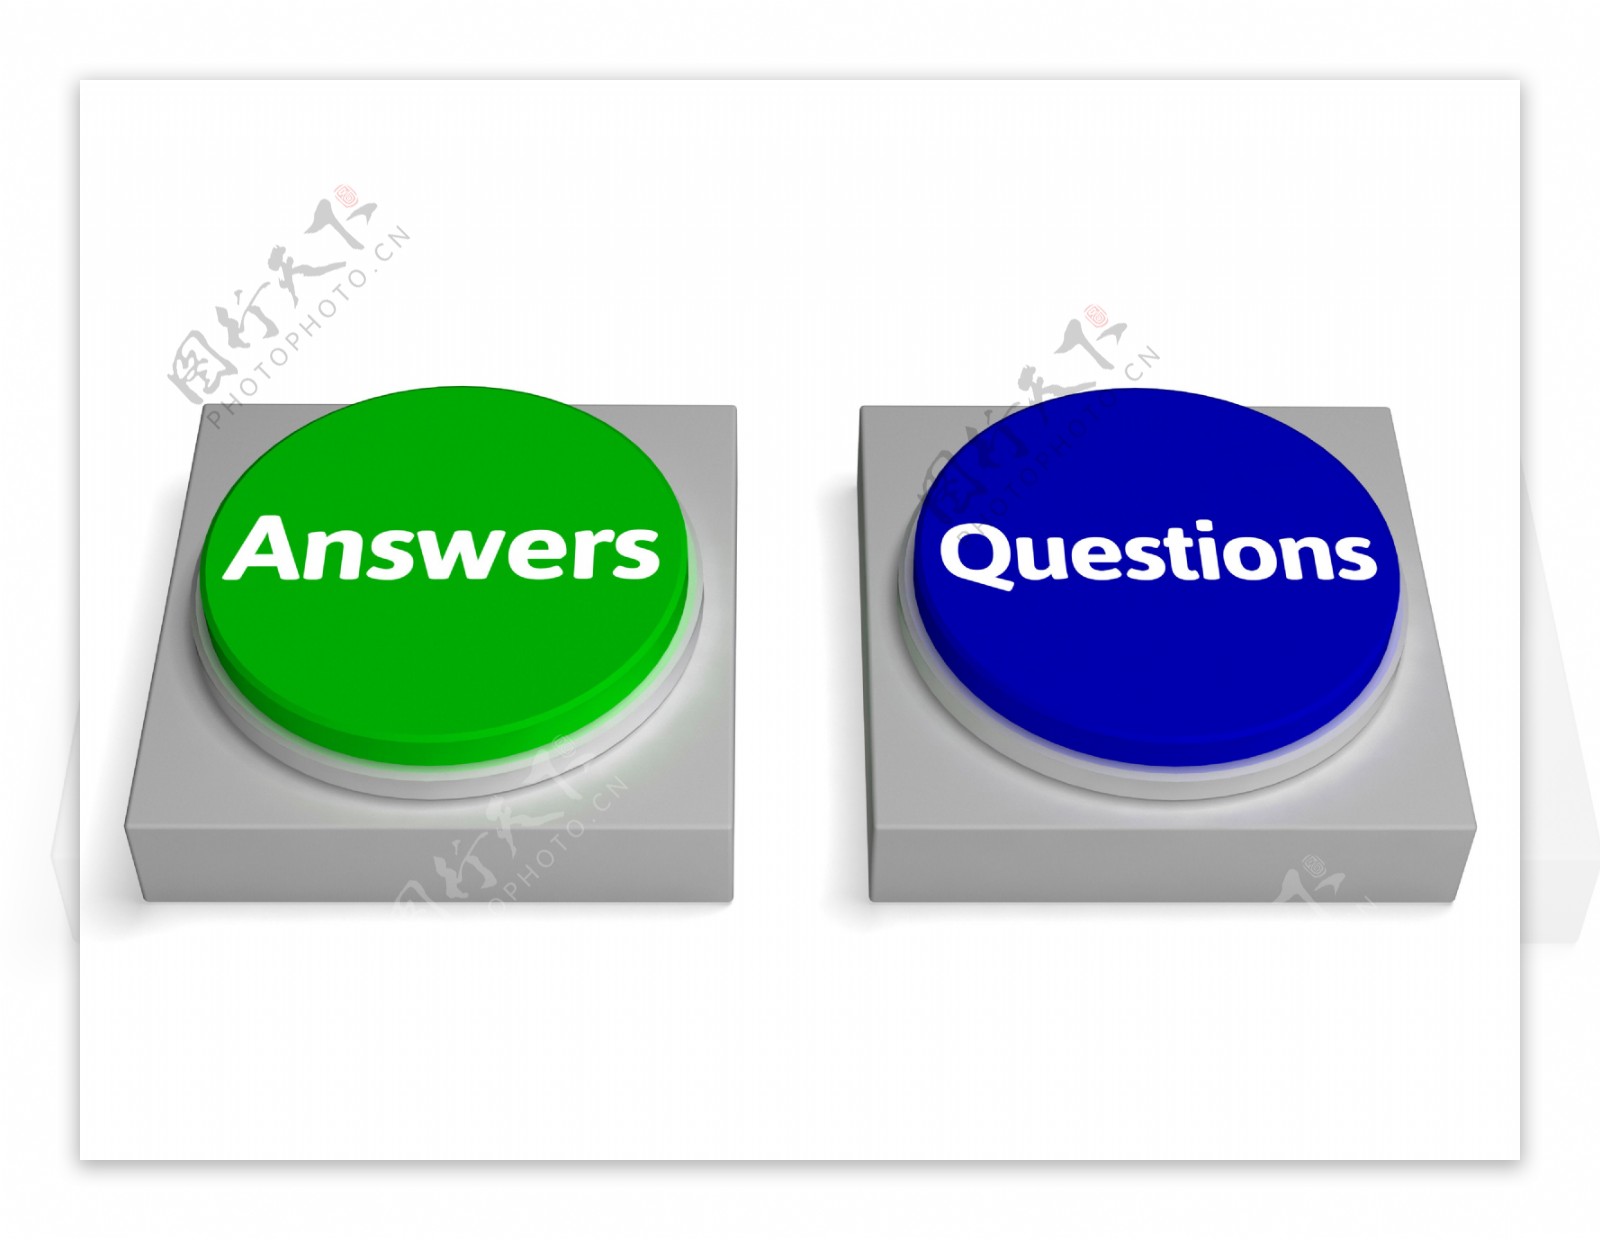 回答问题的按钮显示常见问题解答或解决方案